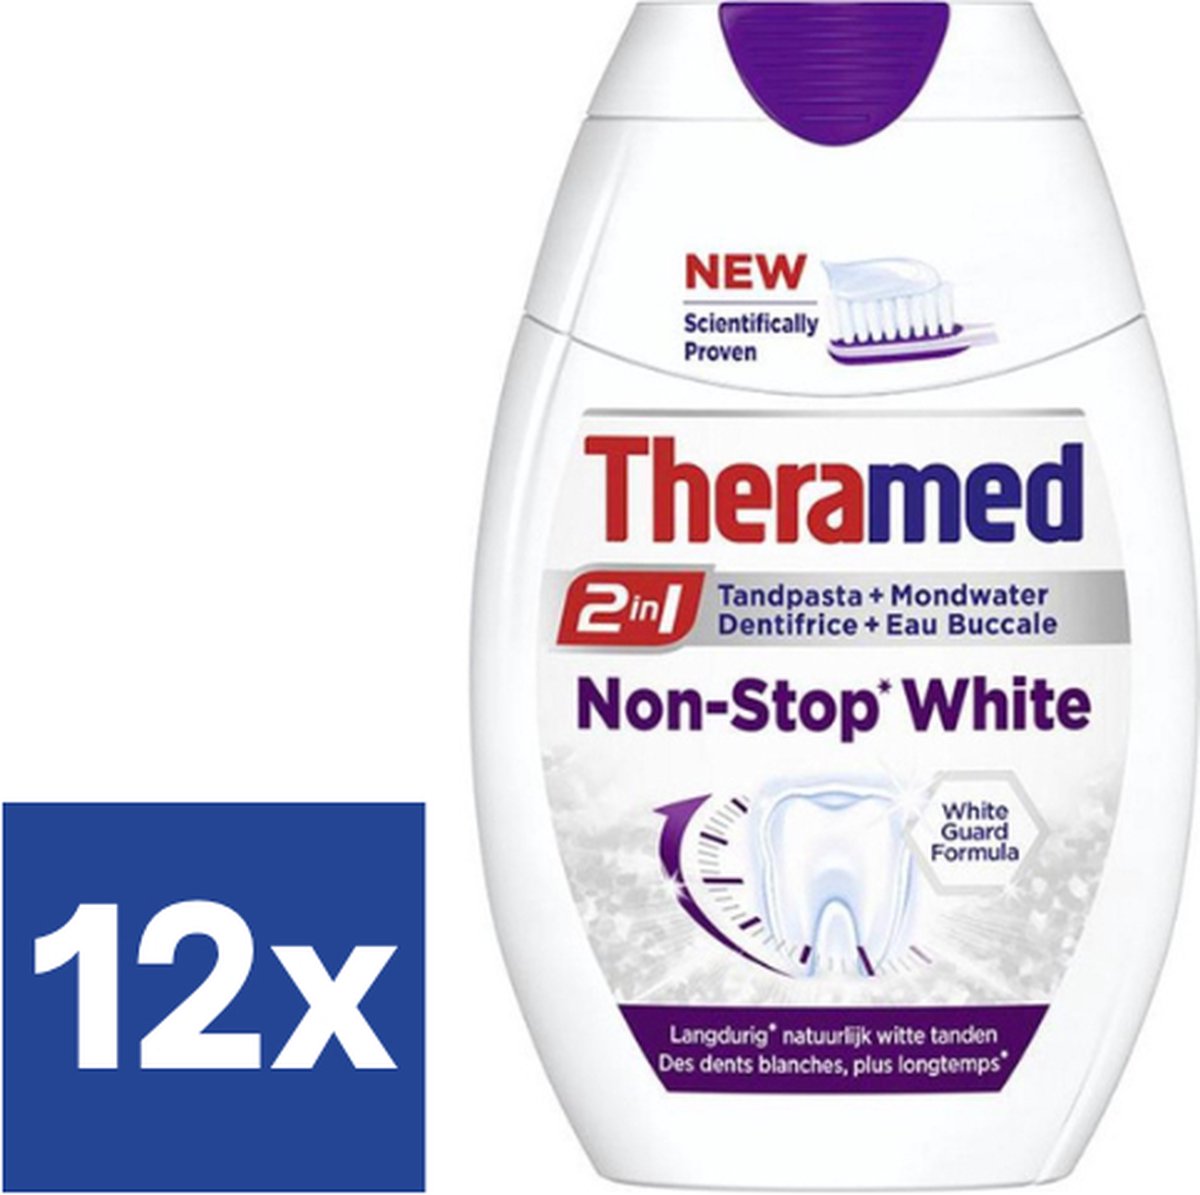 Theramed Tandpasta 2 In 1 Non-Stop White - 12 x 75 ml